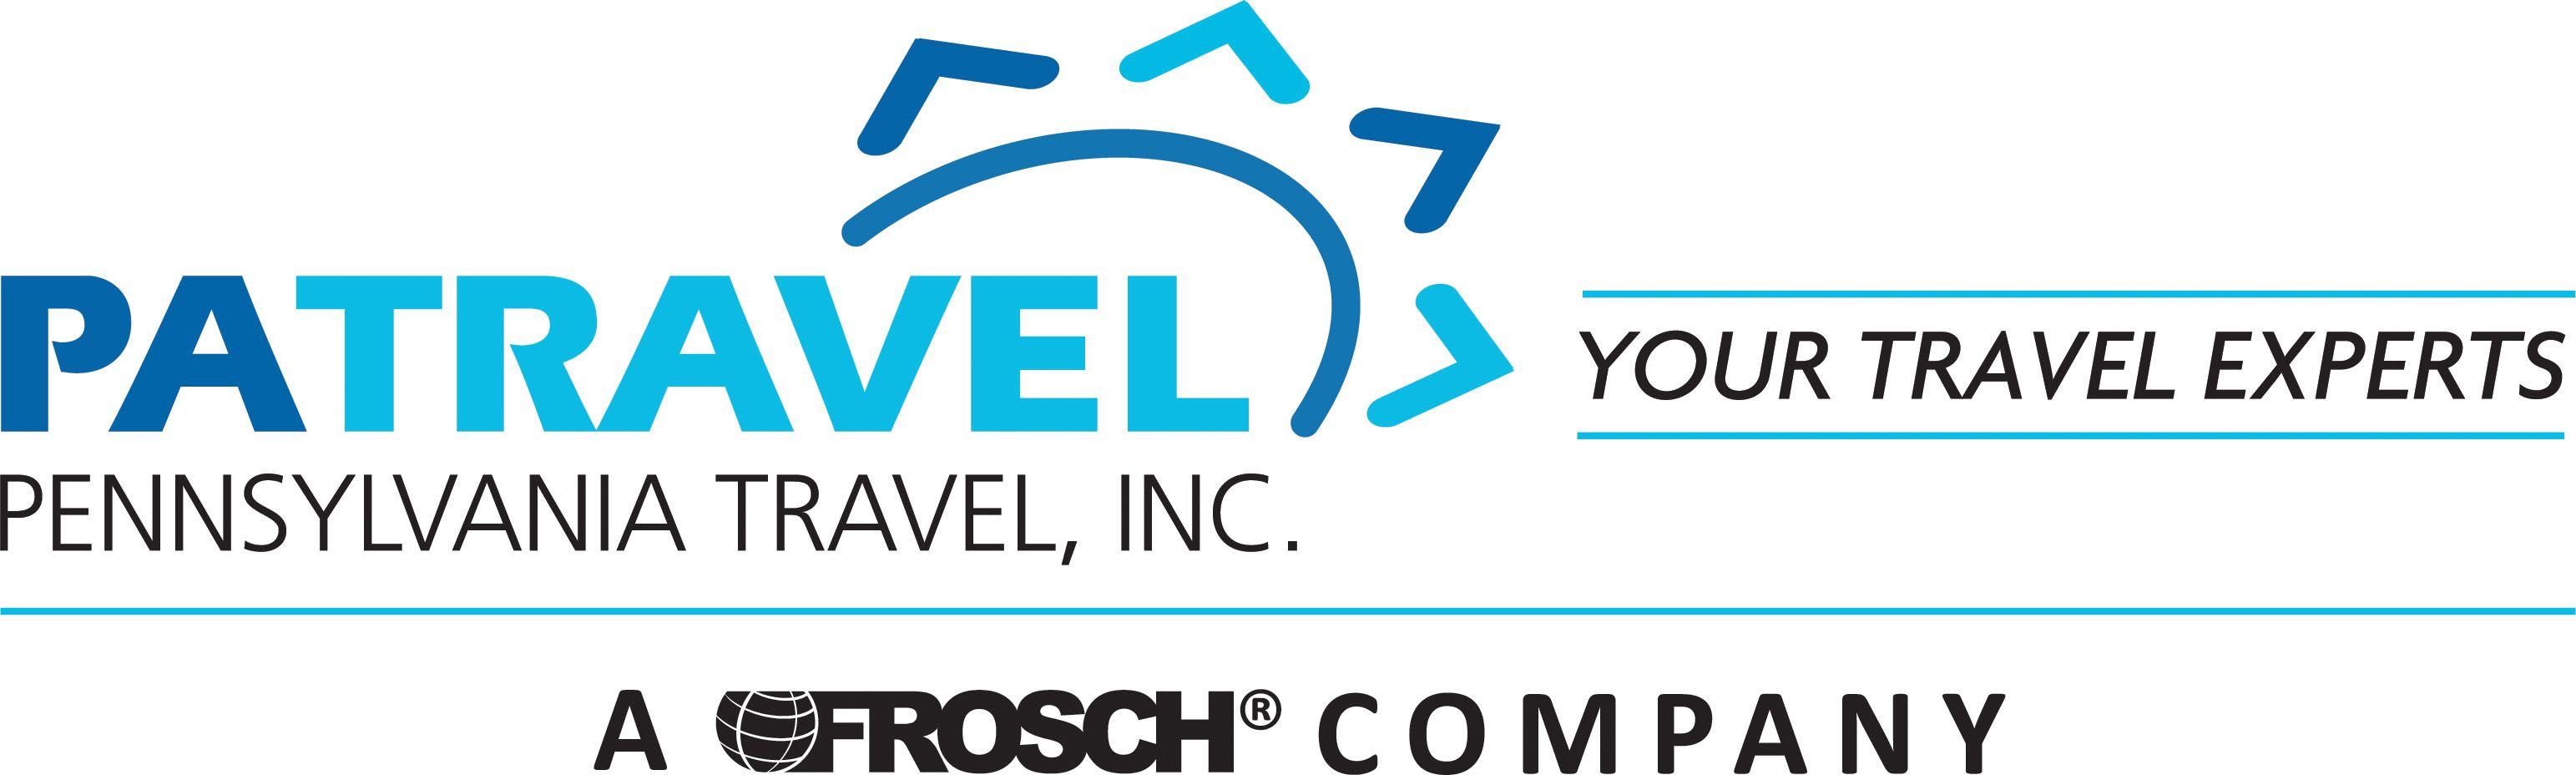 Travel.com Logo - Home